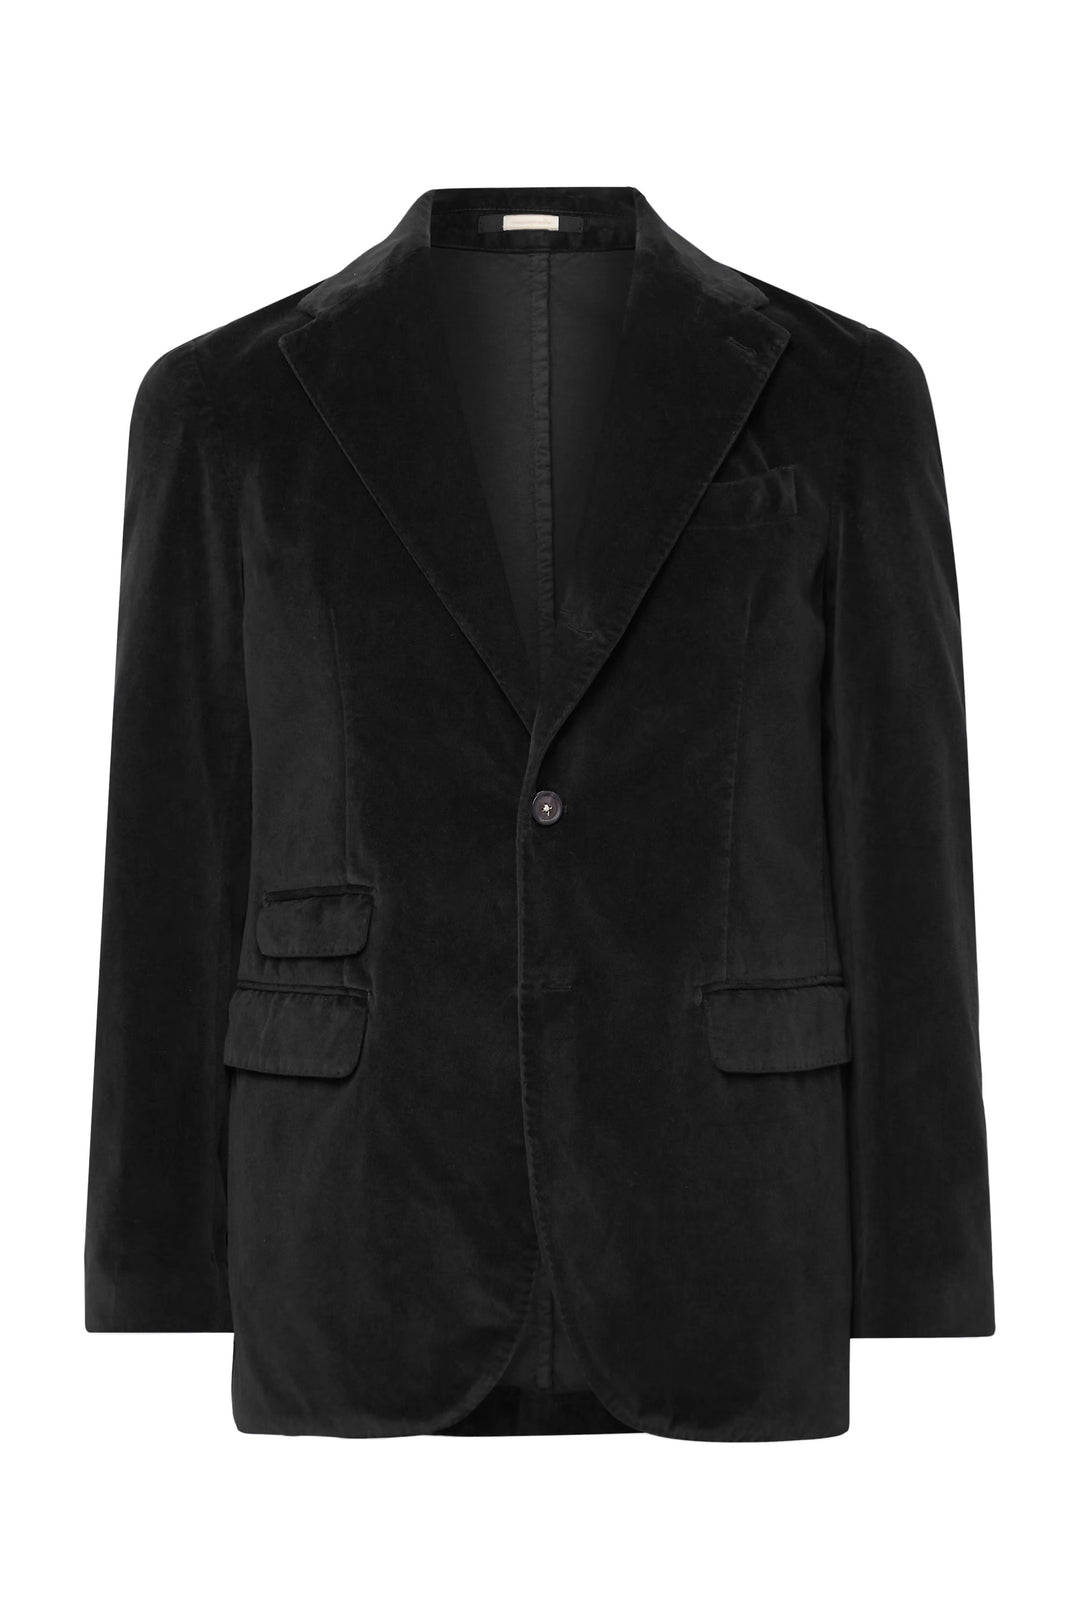 Massimo Alba Black Velvet Jacket